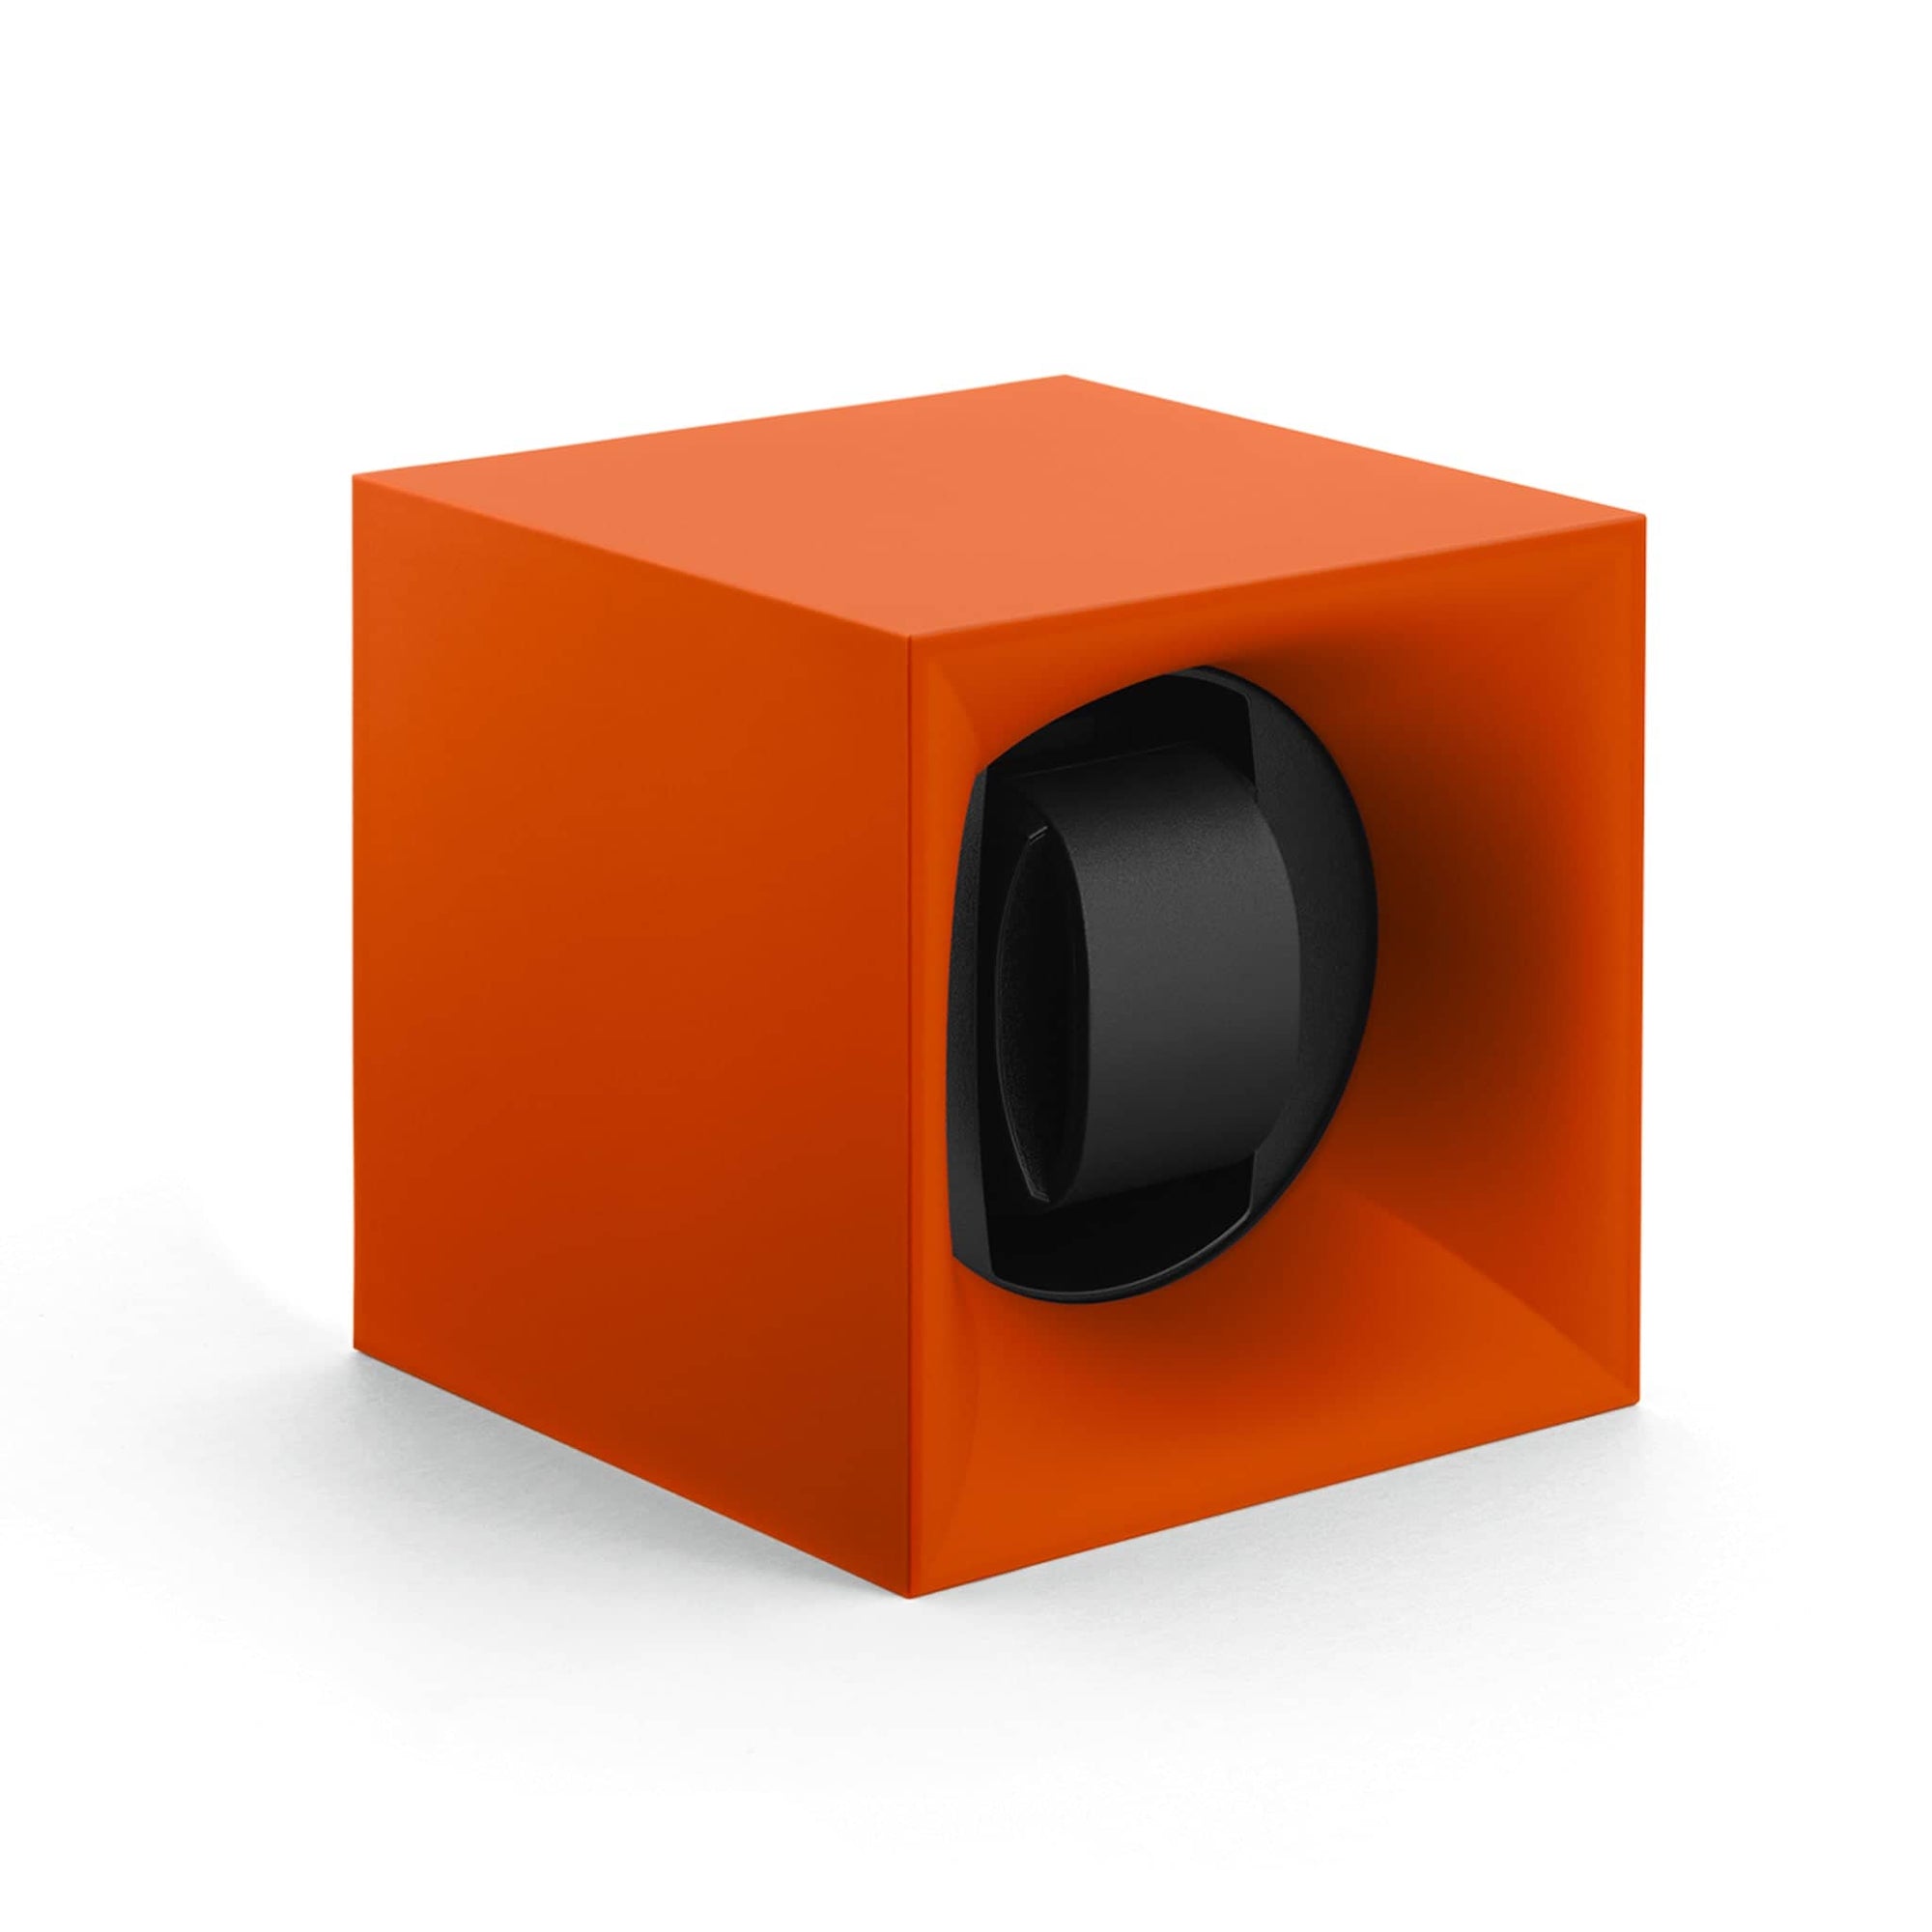 Remontoir Montre - Startbox Orange-1-Le Remontoir Montre